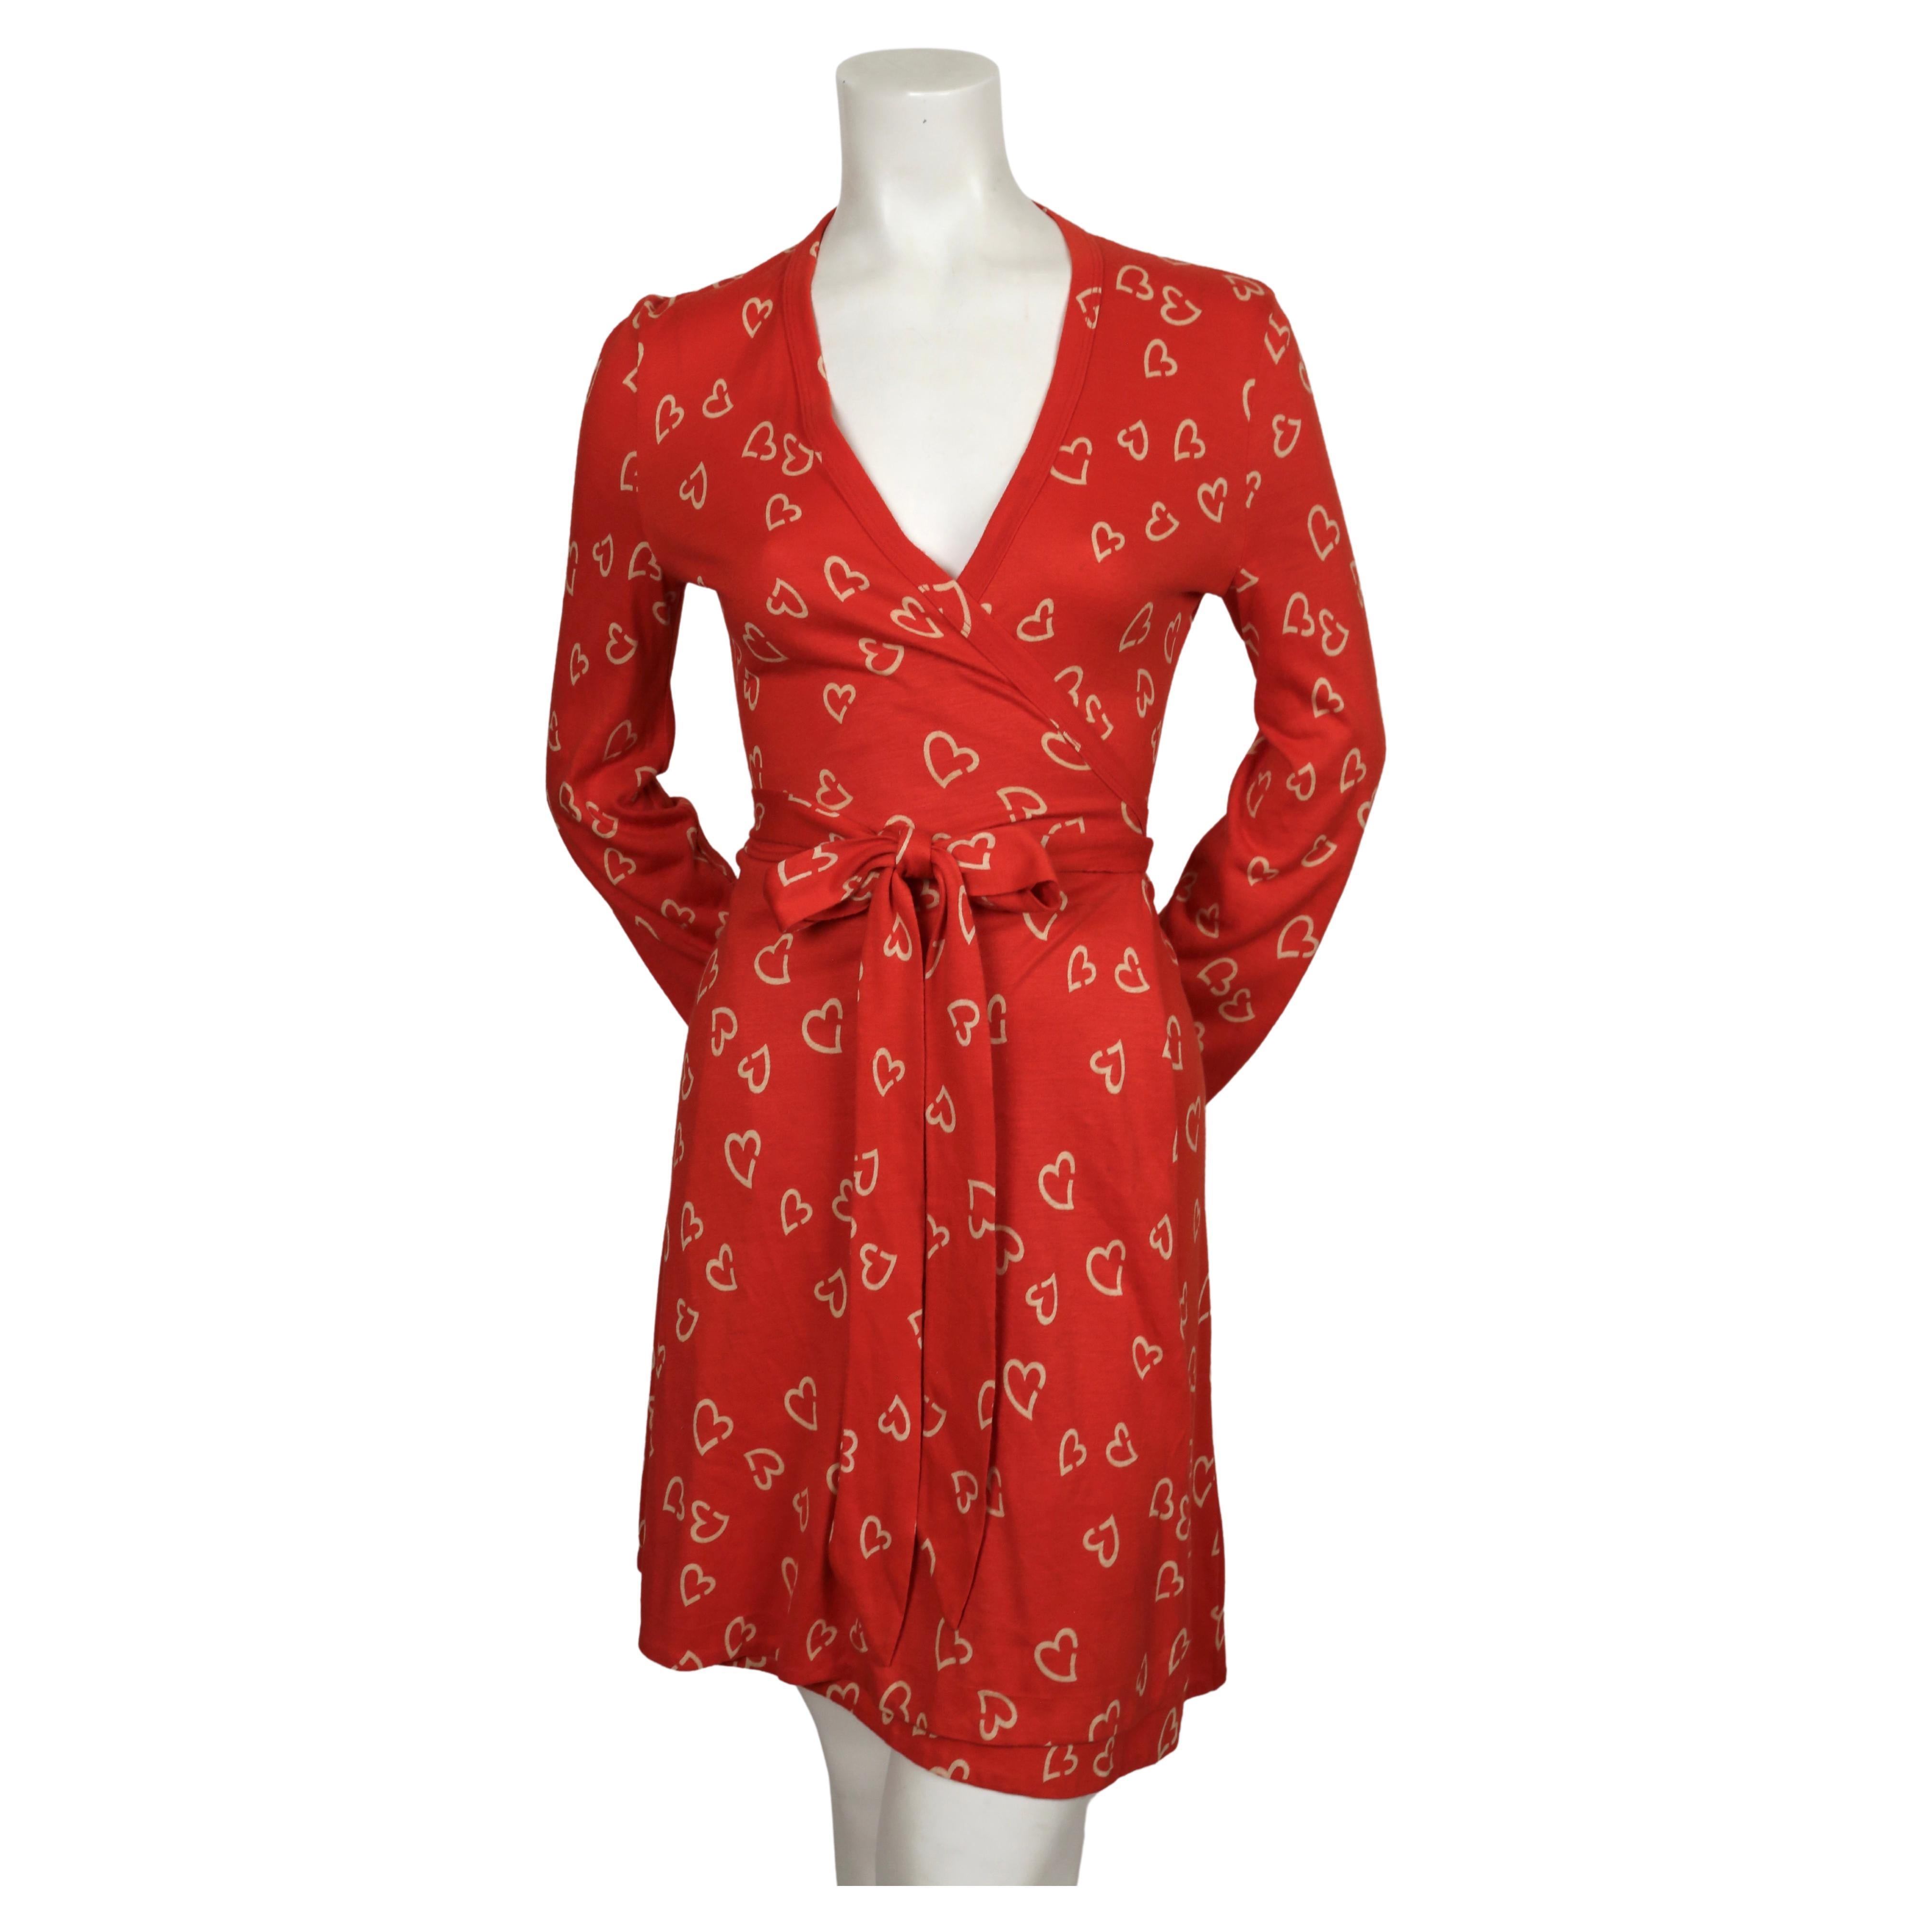 Rotes und cremefarbenes, mit Herzen bedrucktes Wickelkleid von Diane Von Furstenberg aus den 1970er Jahren. Vintage Größe 10 aber dies passt viel kleiner. Das Kleid war an der Schaufensterpuppe in Größe 2 nicht angeschnitten. Passt am besten in US